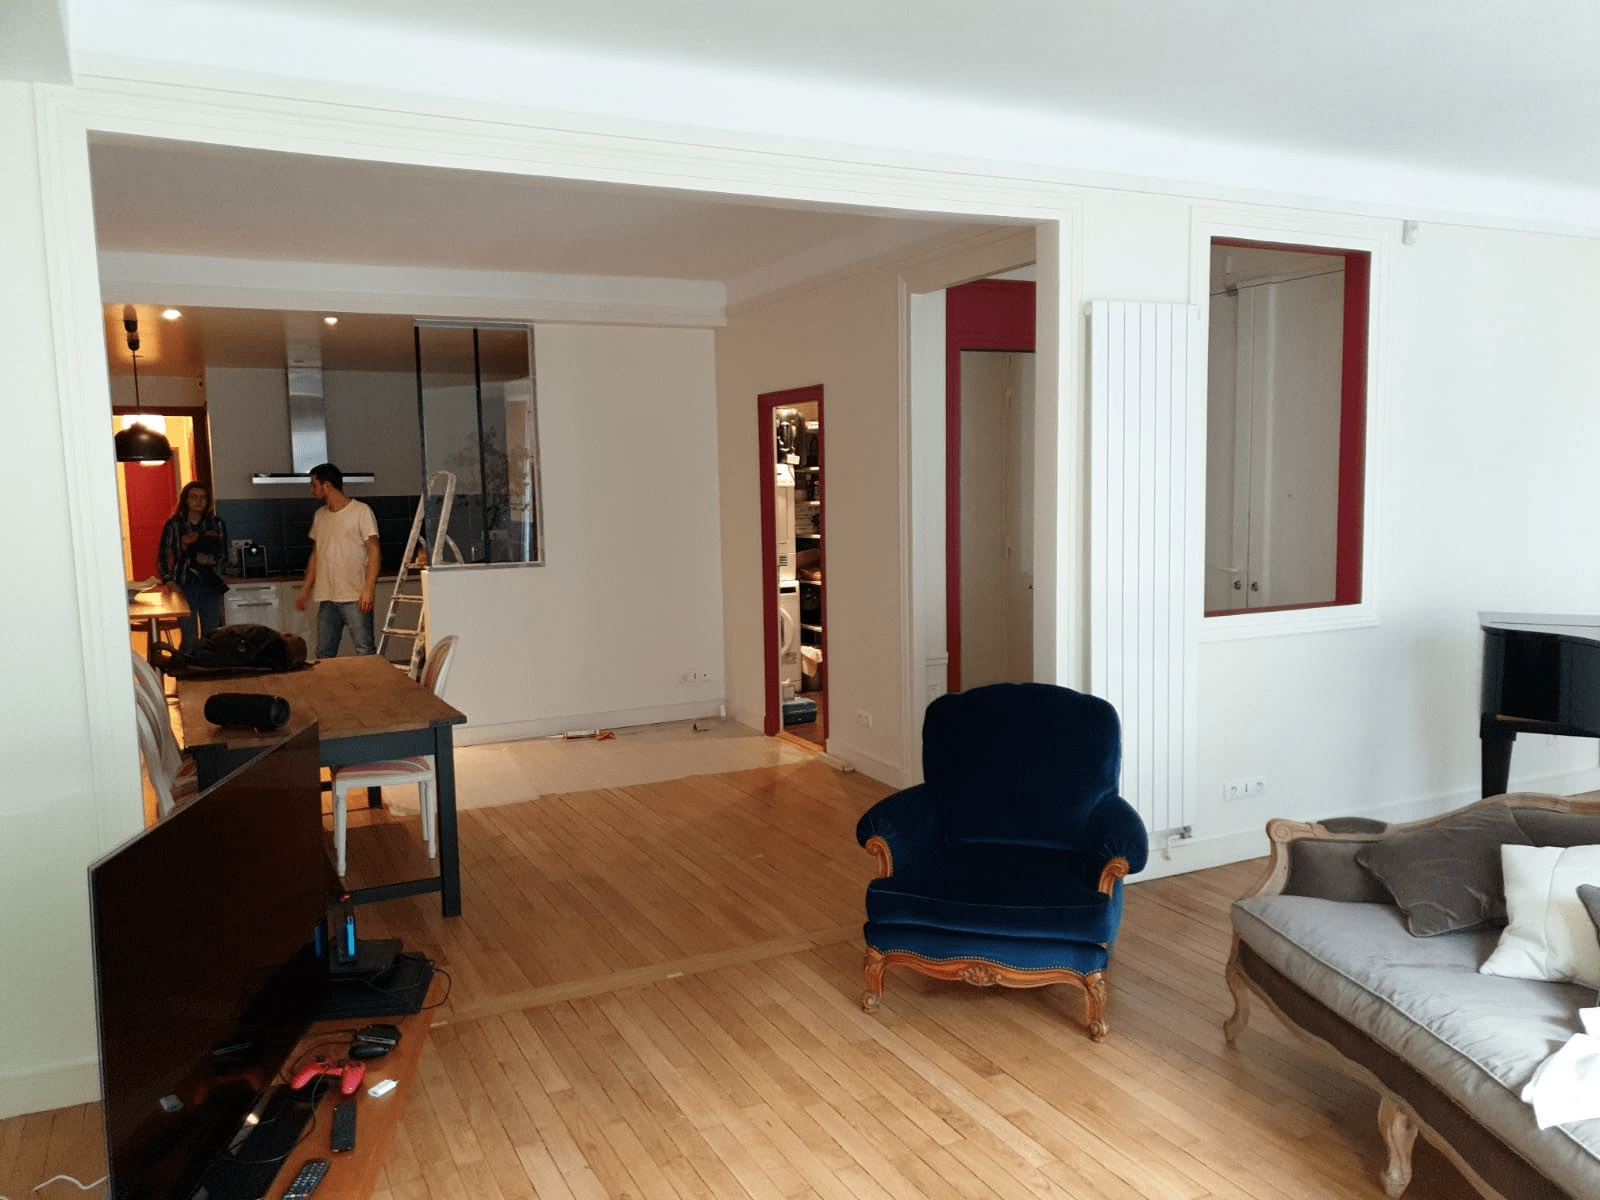 Salon et cuisine|Enduit et peinture 28 m² 
à Paris 15 éme Budget 1600€.